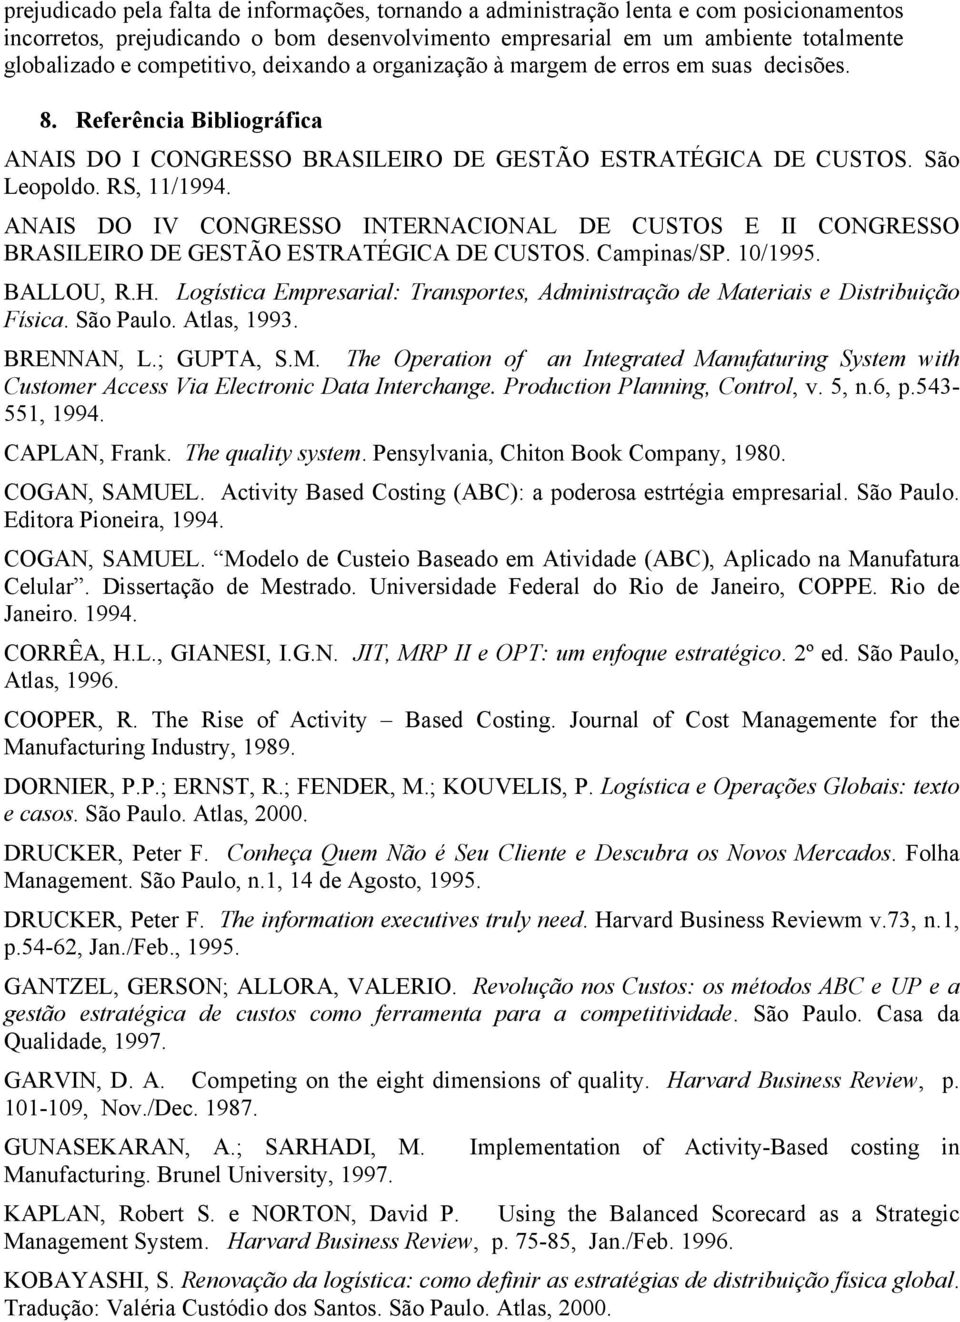 ANAIS DO IV CONGRESSO INTERNACIONAL DE CUSTOS E II CONGRESSO BRASILEIRO DE GESTÃO ESTRATÉGICA DE CUSTOS. Campinas/SP. 10/1995. BALLOU, R.H.